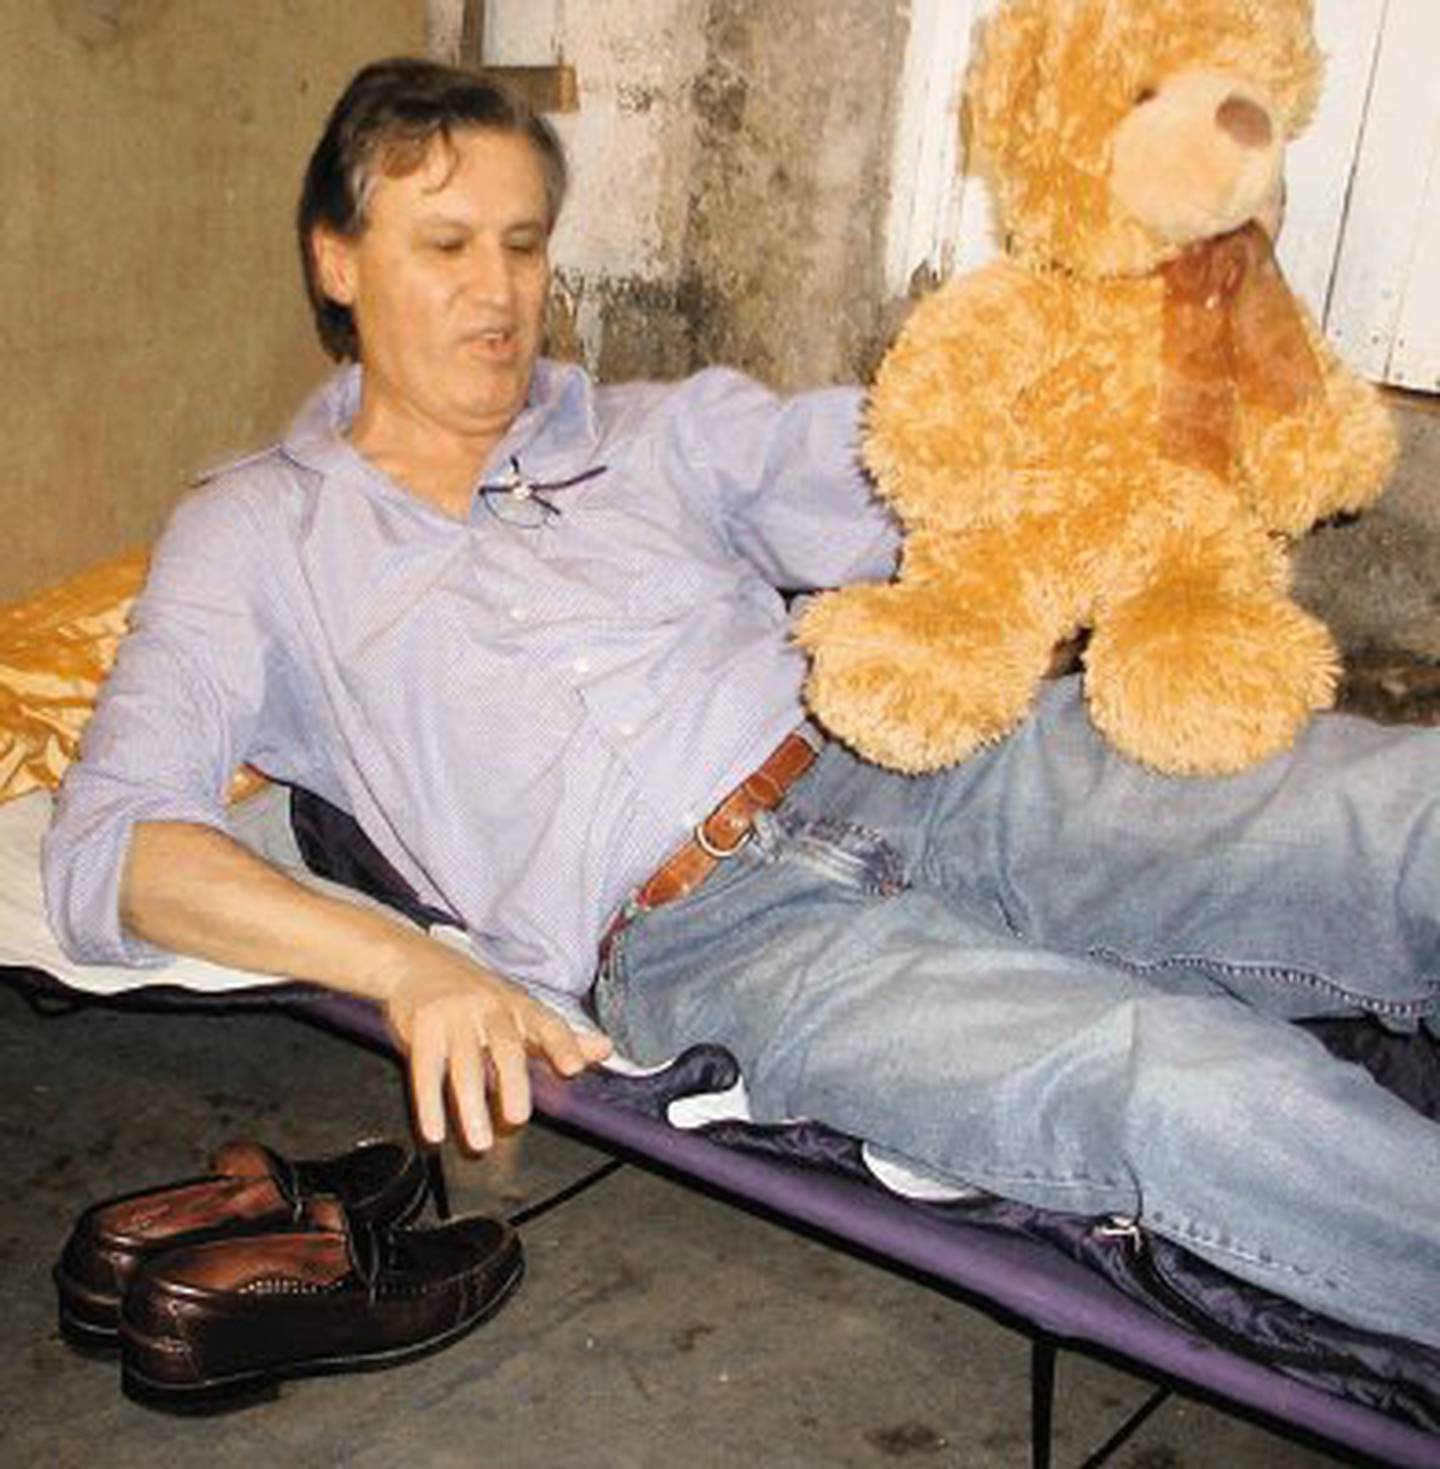 El ministro de vivienda Fernando Zumbado Jiménez con un oso de peluche, tras pasar la noche en un tugurio de Lomas del Río, Pavas, el 29 de mayo del 2007. En la foto, cuando ya estaba en el catre que llevó para dormir.